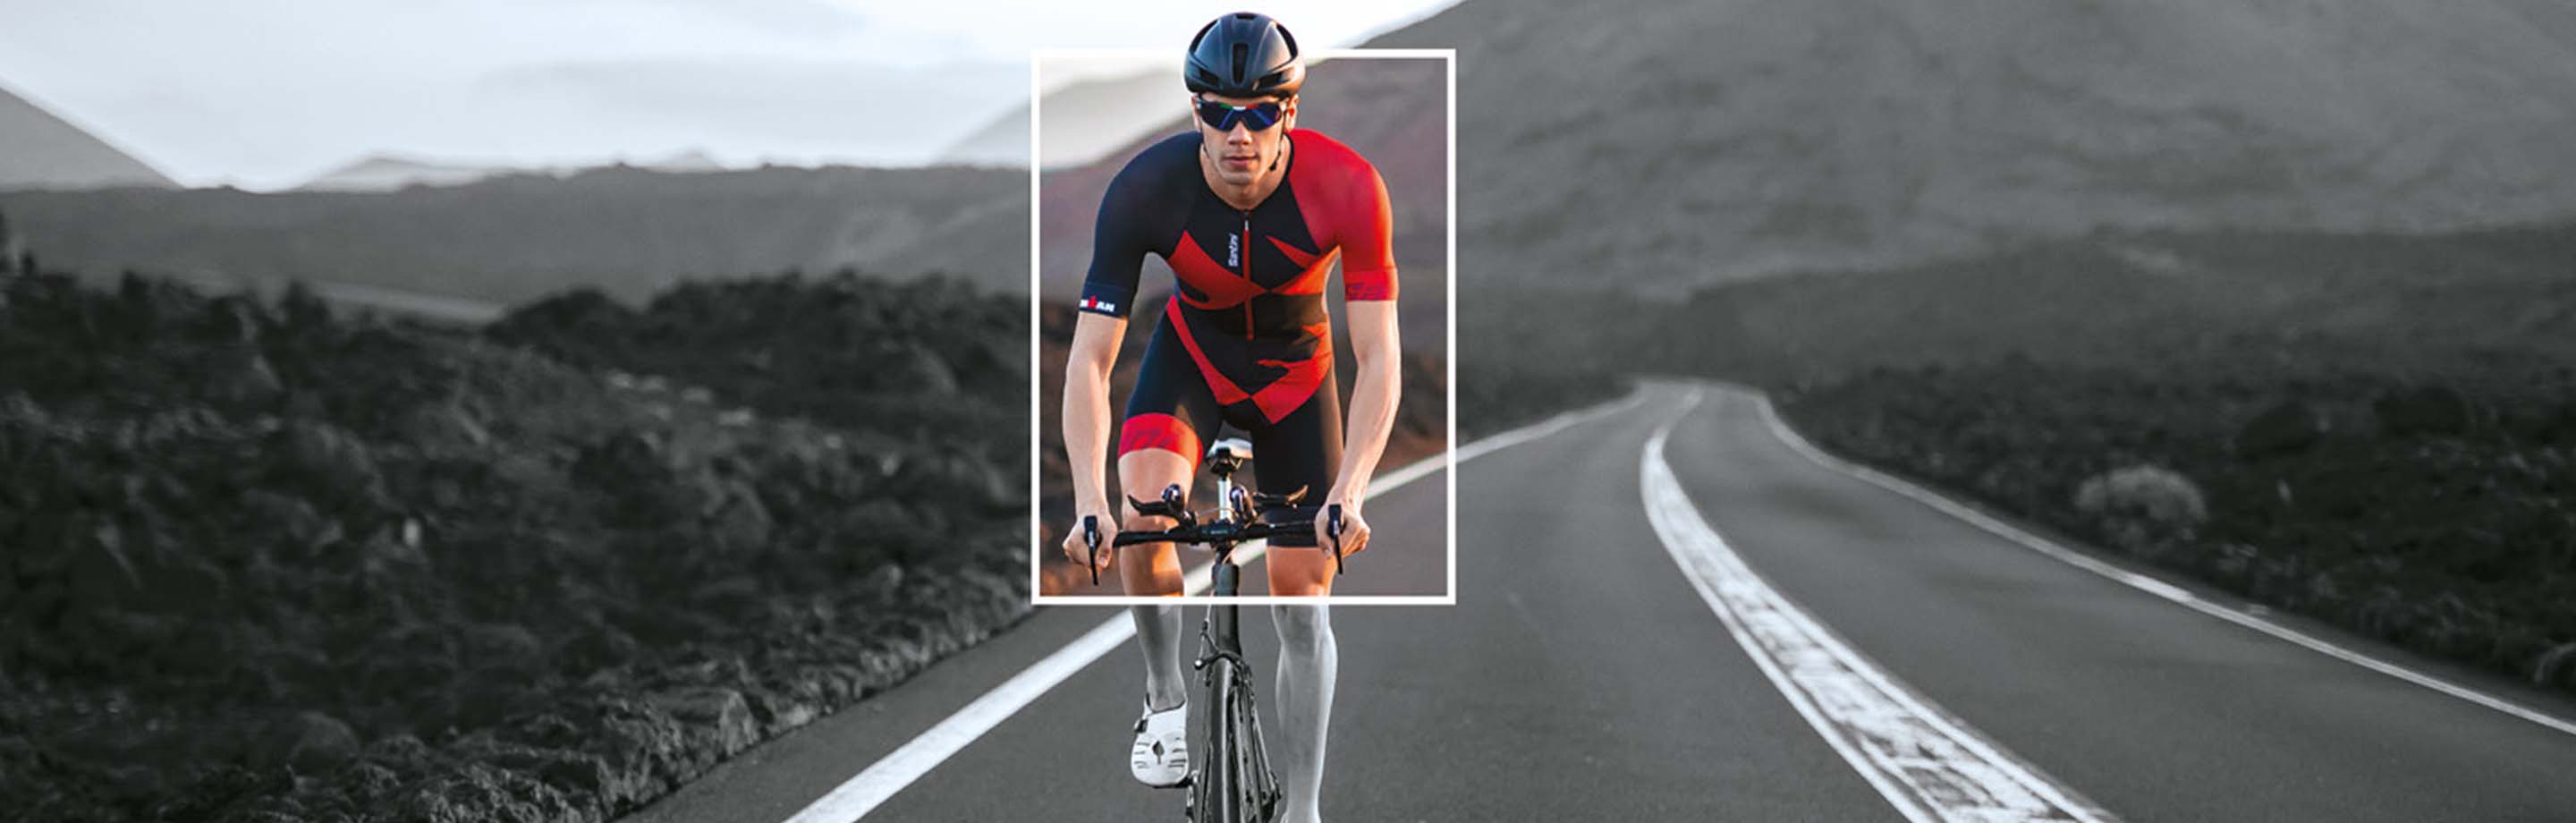 Santini x IRONMAN - Ropa exclusiva de IRONMAN para ciclismo y triatlón